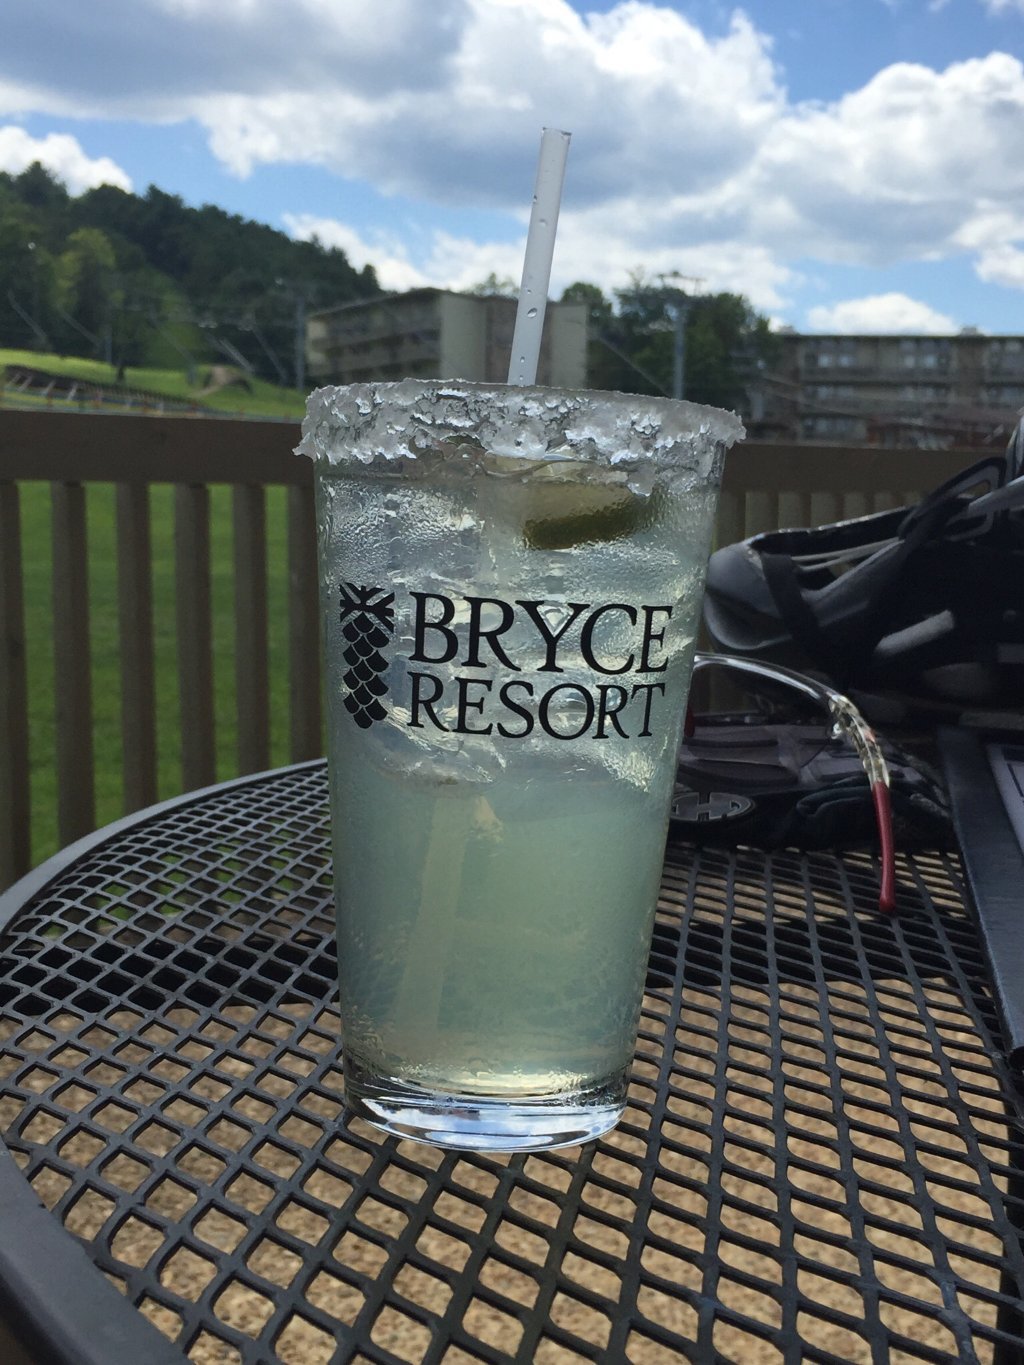 Bryce Resort